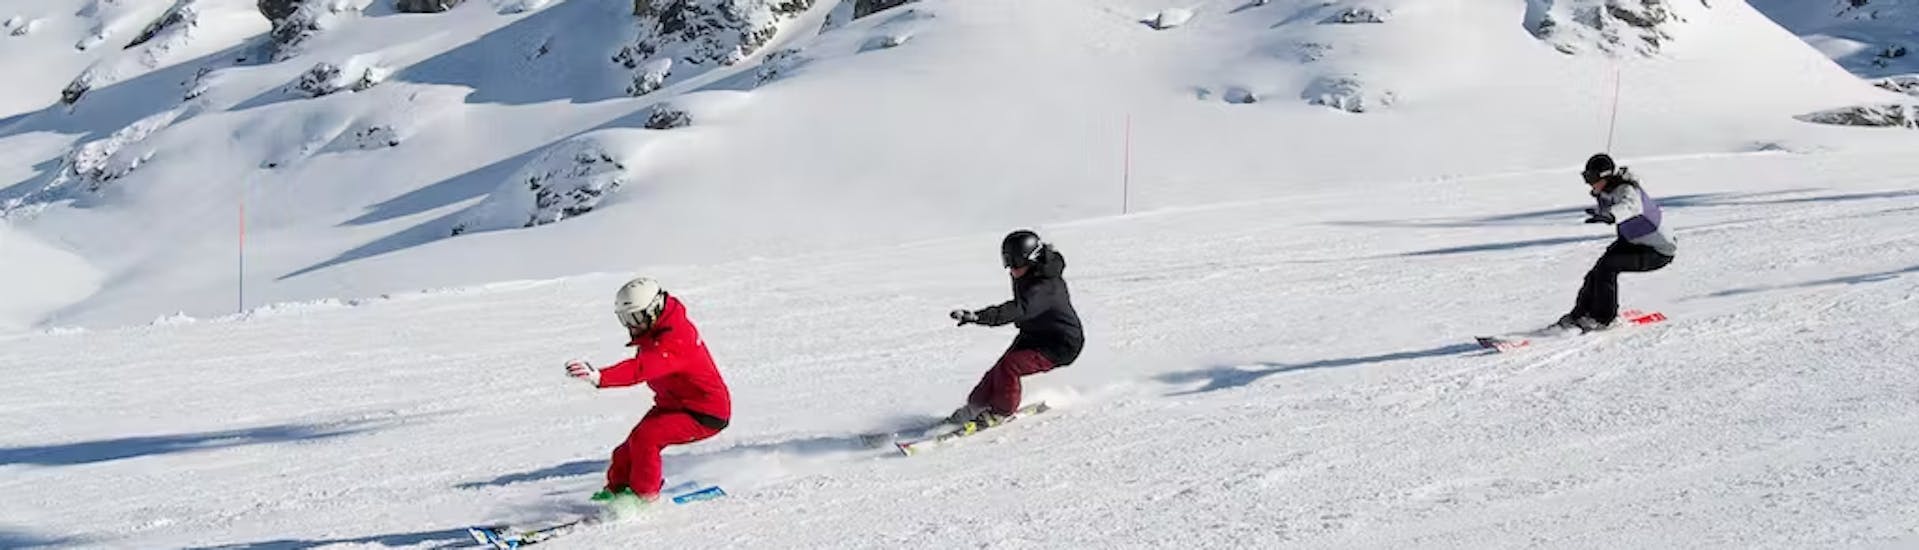 Clases de esquí para adolescentes (14-18 años) para esquiadores avanzados.